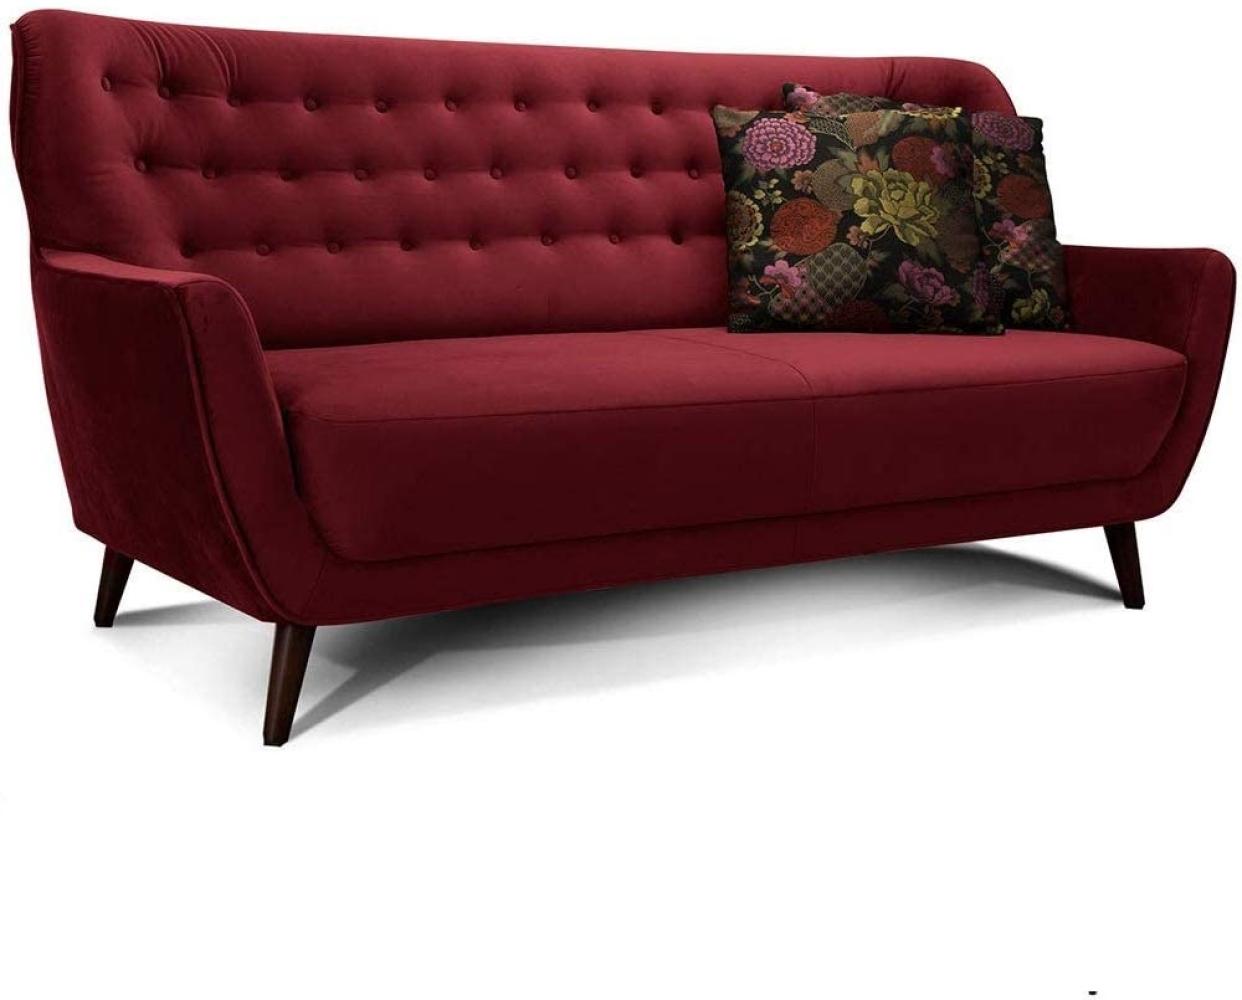 CAVADORE 3-Sitzer-Sofa Abby / Retro-Couch im Samt-Look mit Knopfheftung / 183 x 89 x 88 / Samtoptik, rot Bild 1